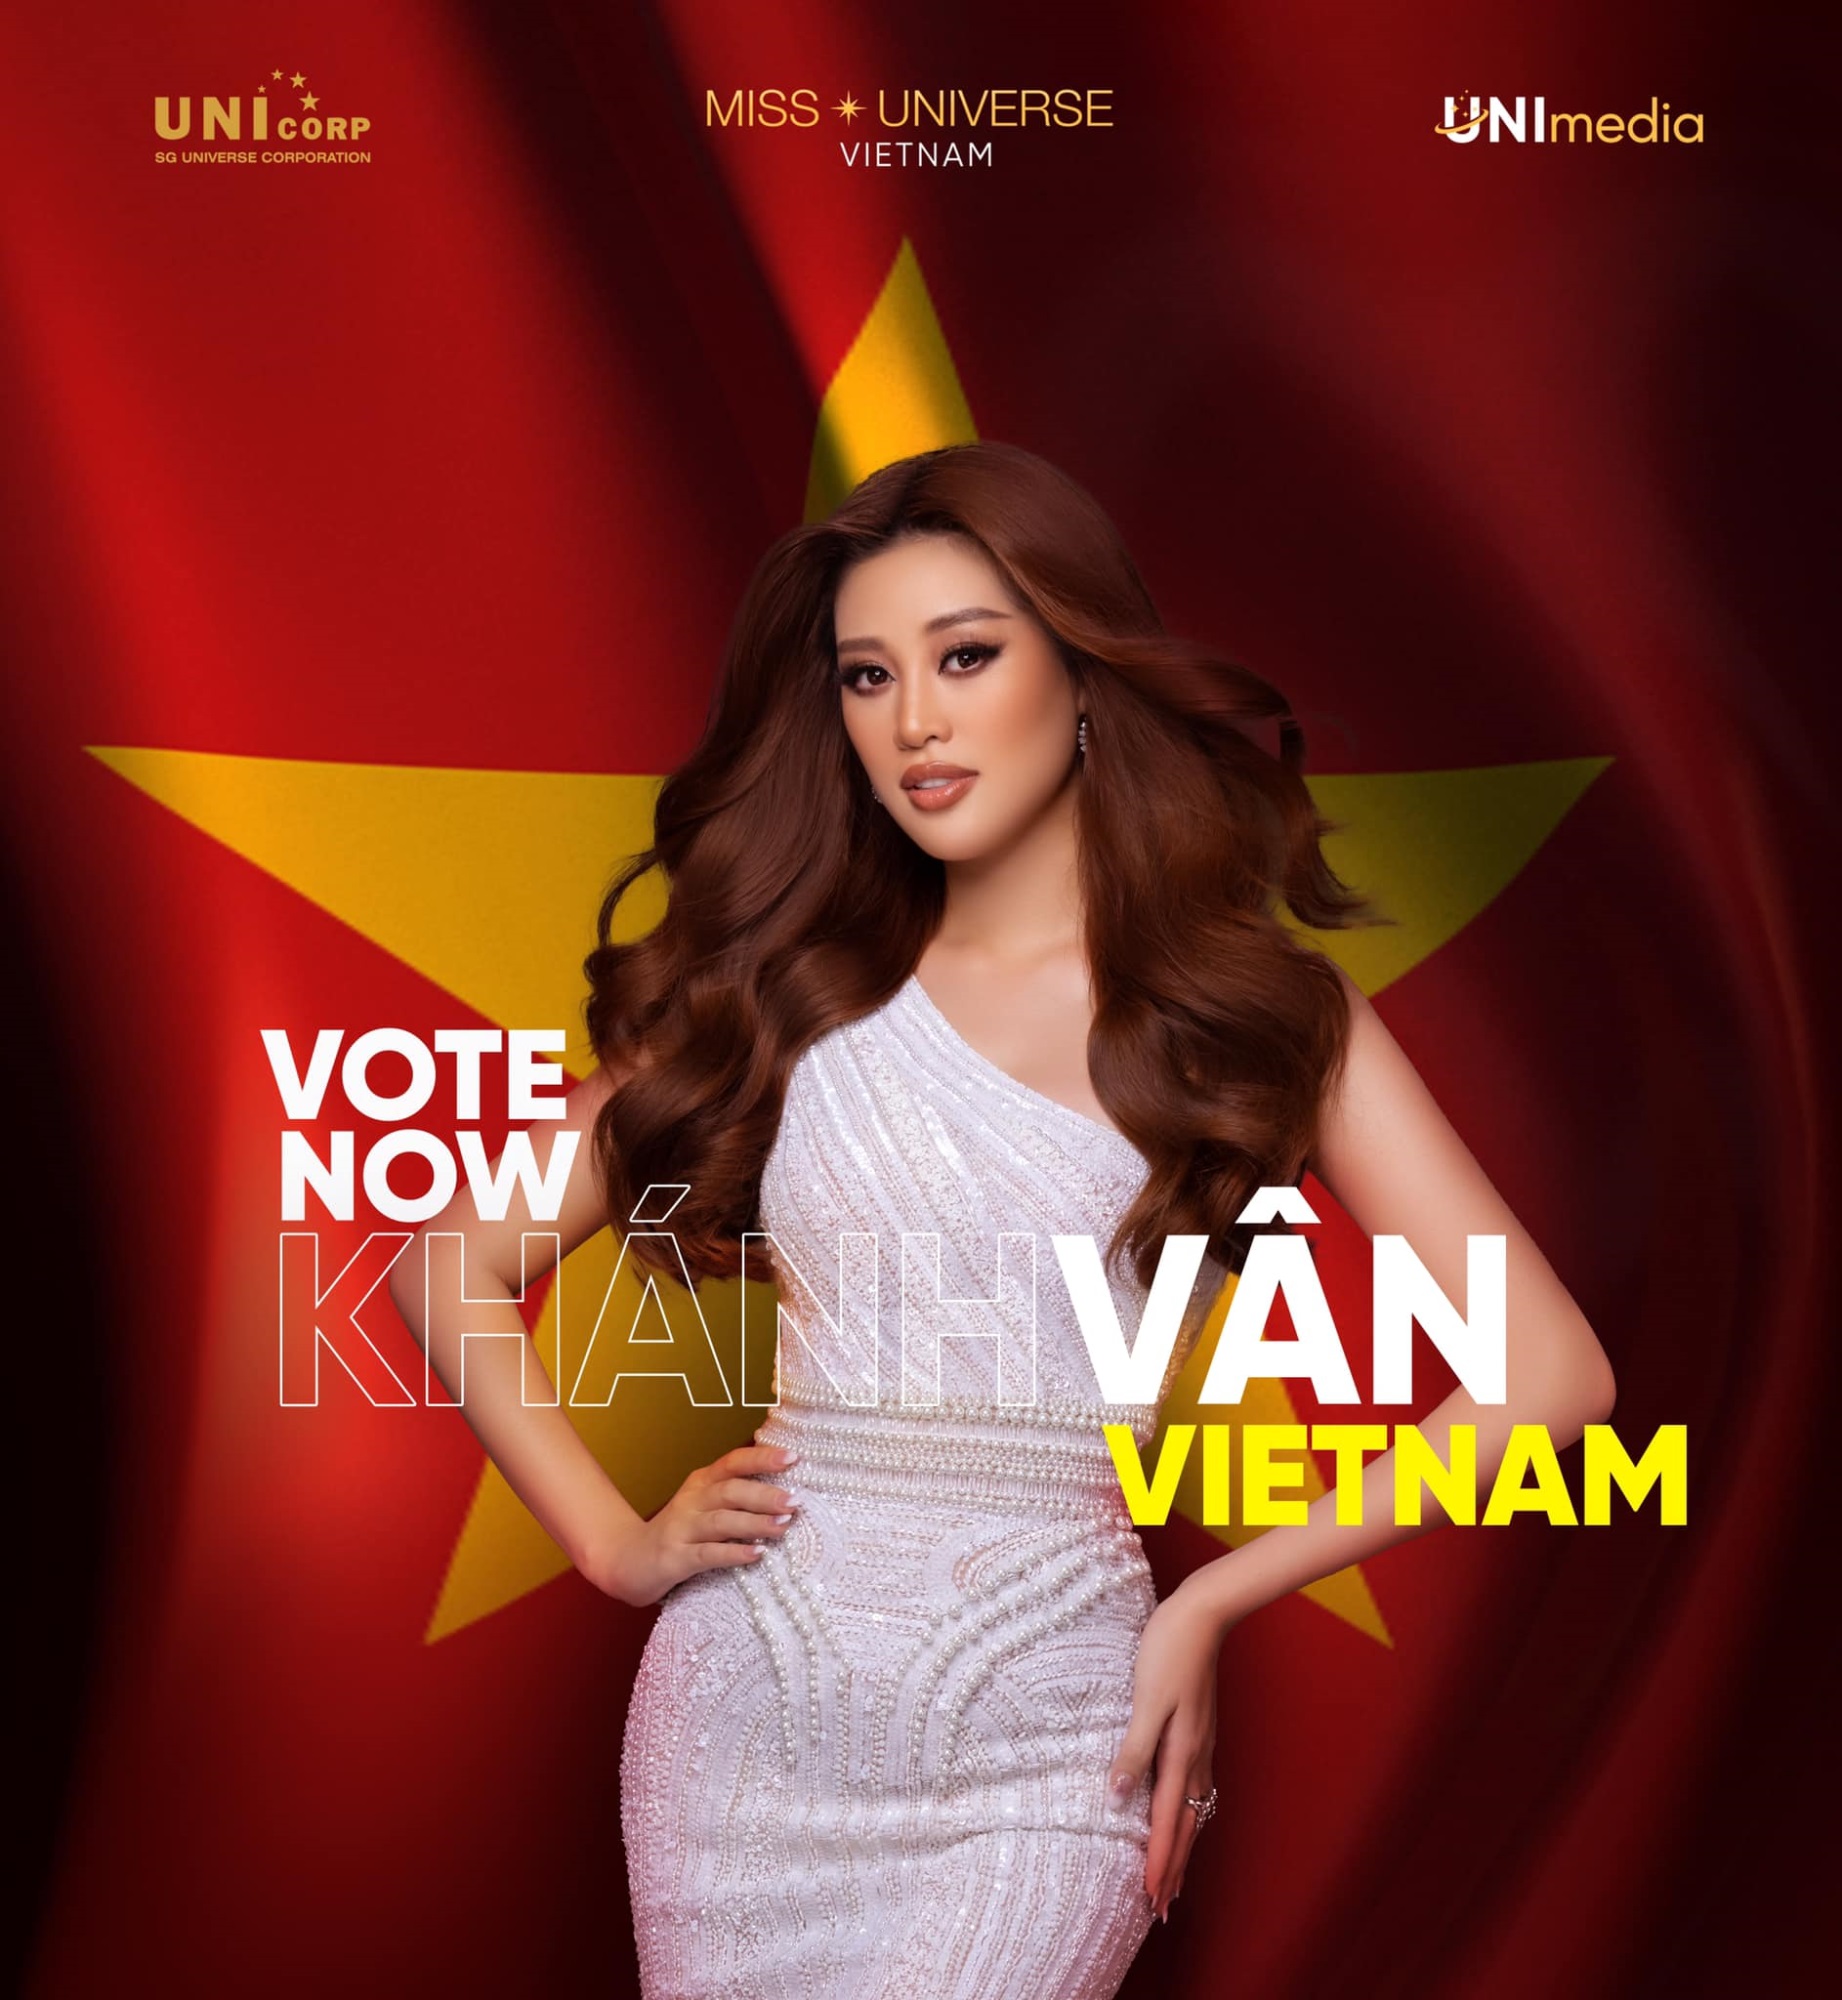 Hoa hậu Khánh Vân lên đường sang Mỹ thi Miss Universe, trang phục gây chú ý - Ảnh 7